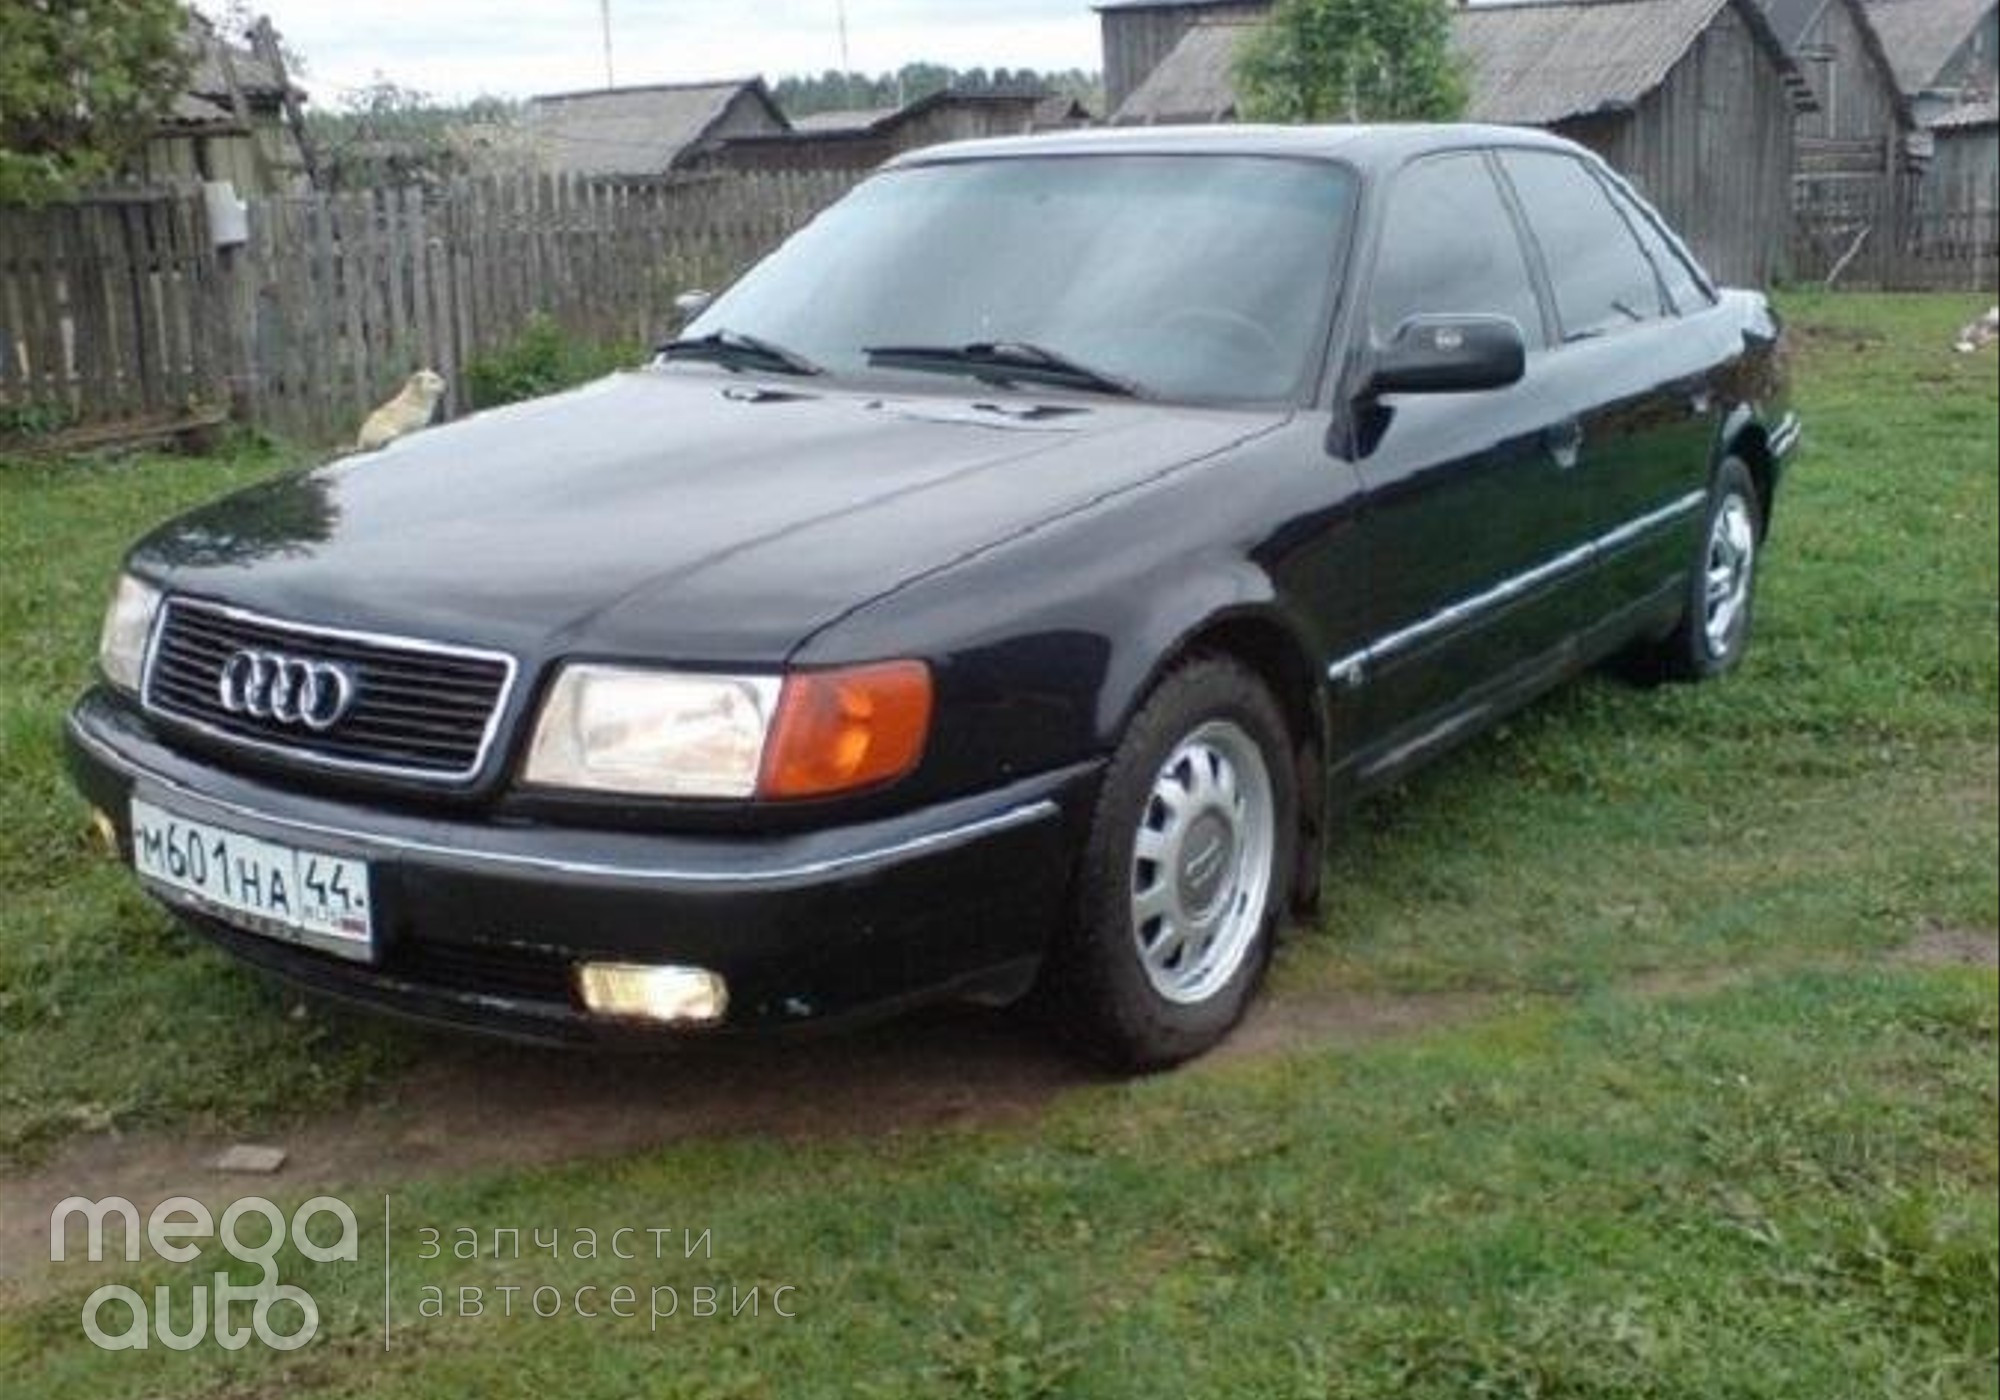 Audi 100 C4 1992 г. в разборе